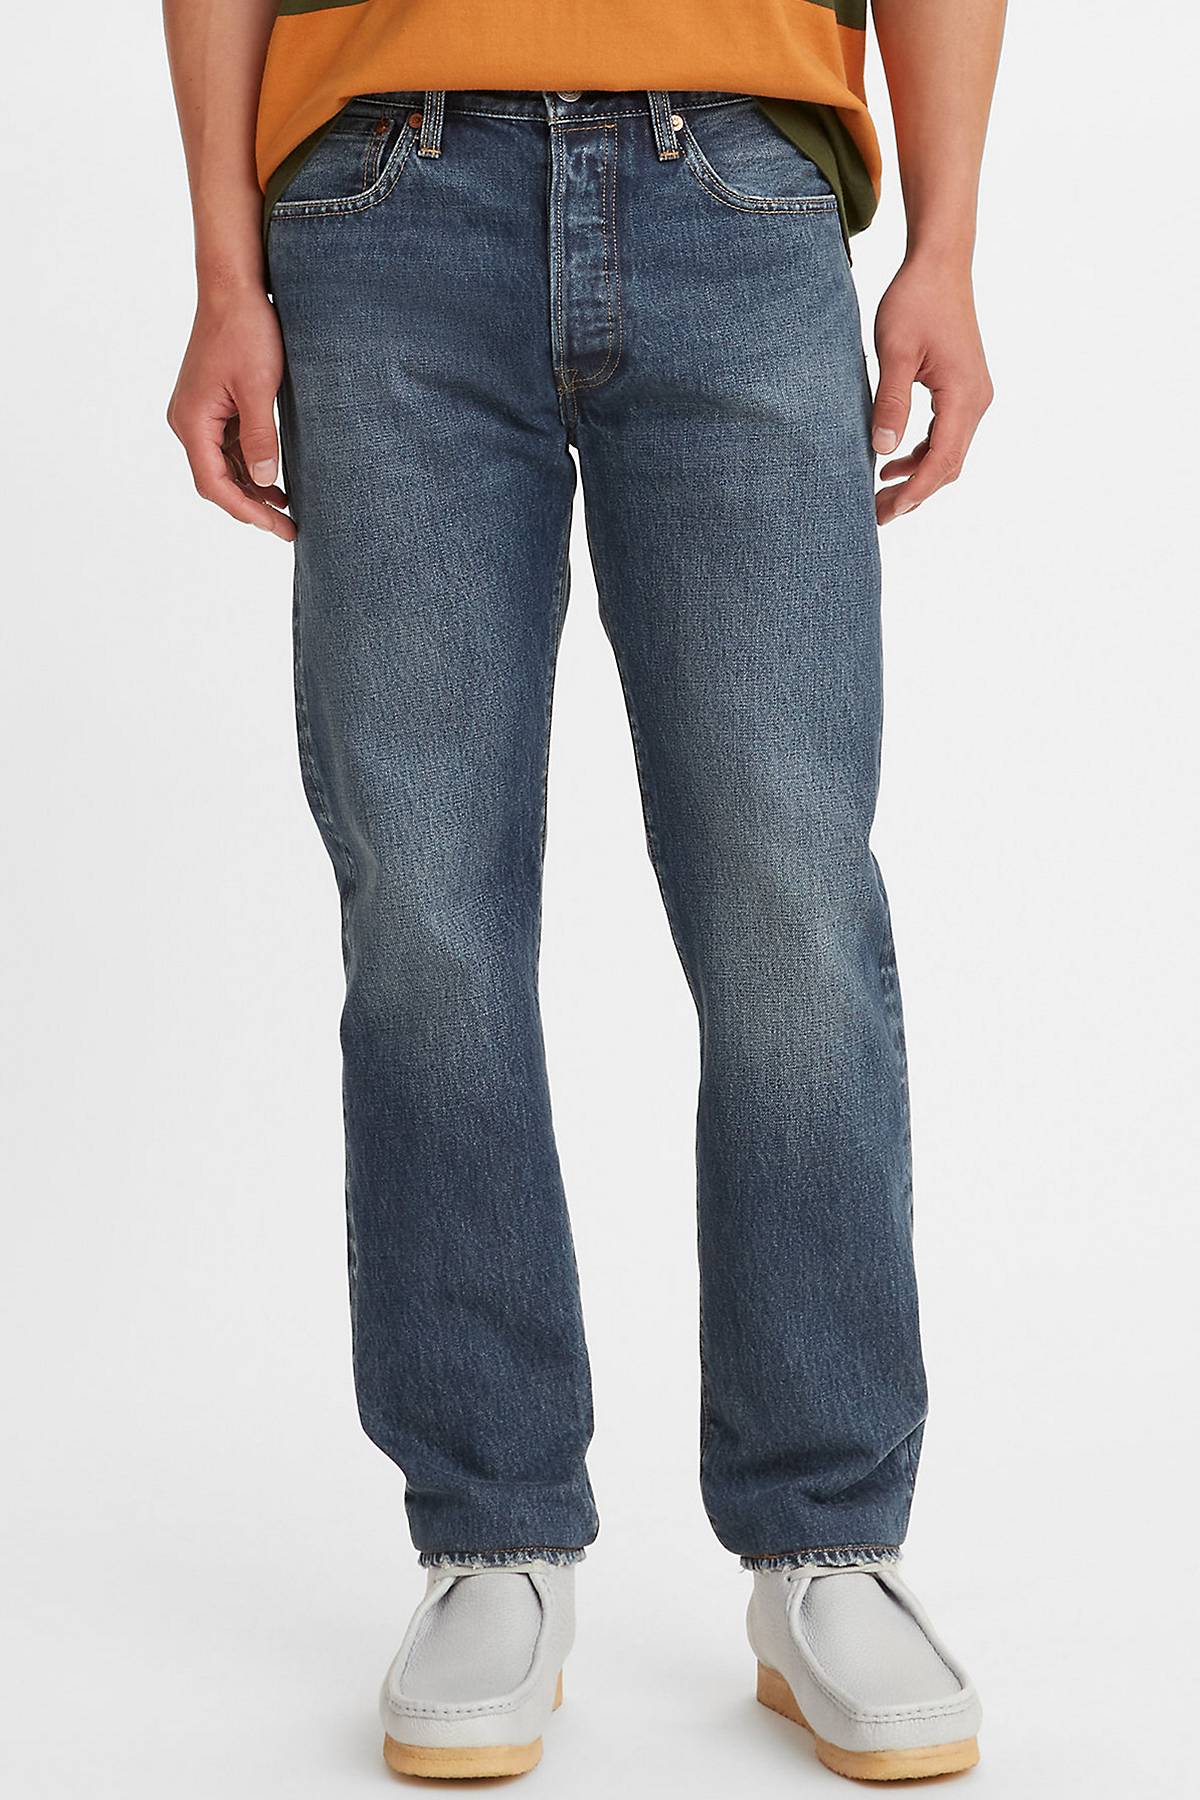 Model wearing 501® Slim Taper Jeans